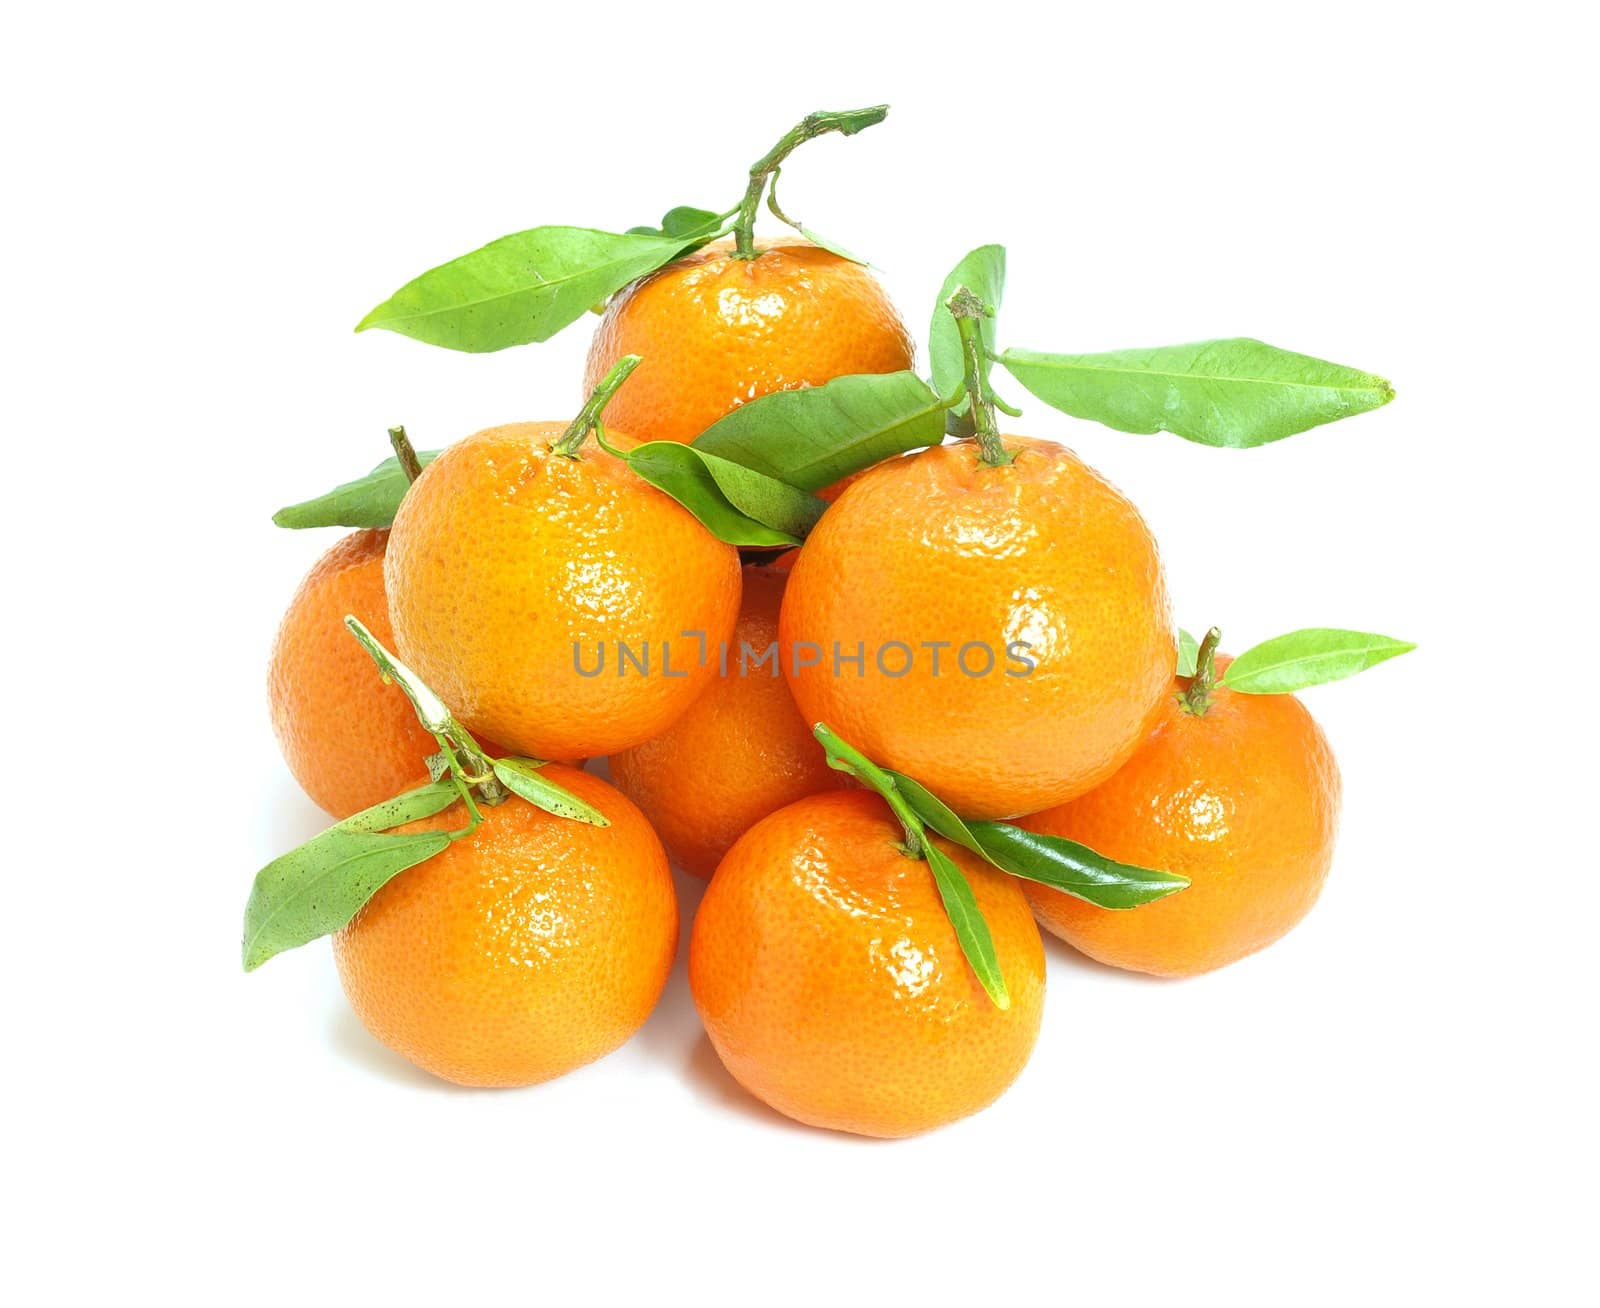 Fresh Spanish mandarins by Ric510